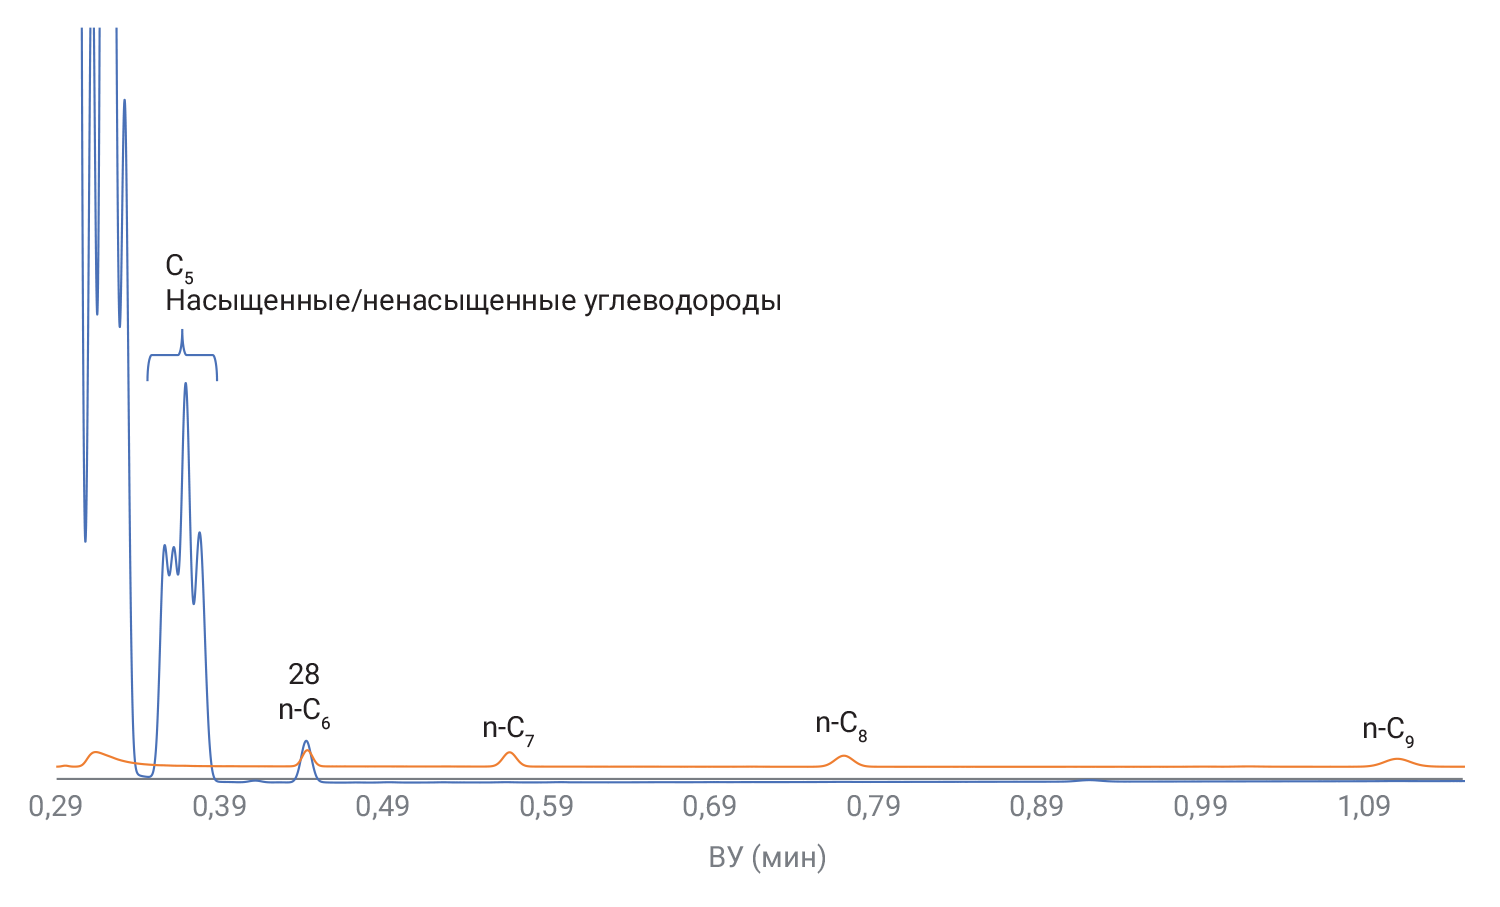 Хроматограммы стандарта нефтехимического газа (голубая линия) и смеси углеводородов от C6 до C9 (красная линия) на колонке CP-Sil 5CB длиной 8 м (канал 4)